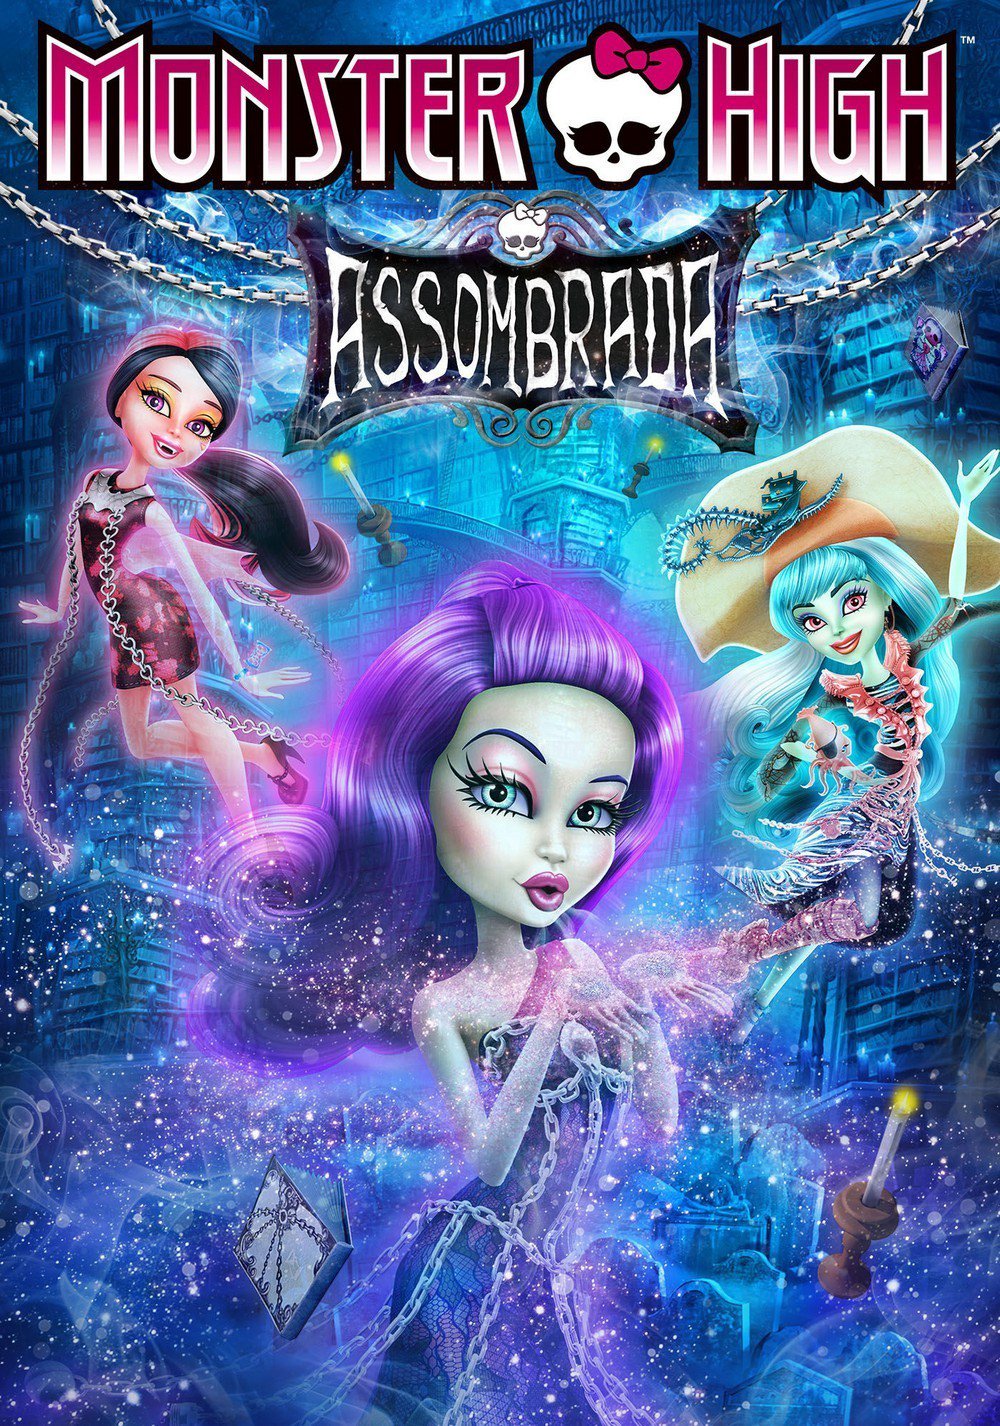 Monster High Assombrada – HD 720p l 1080p